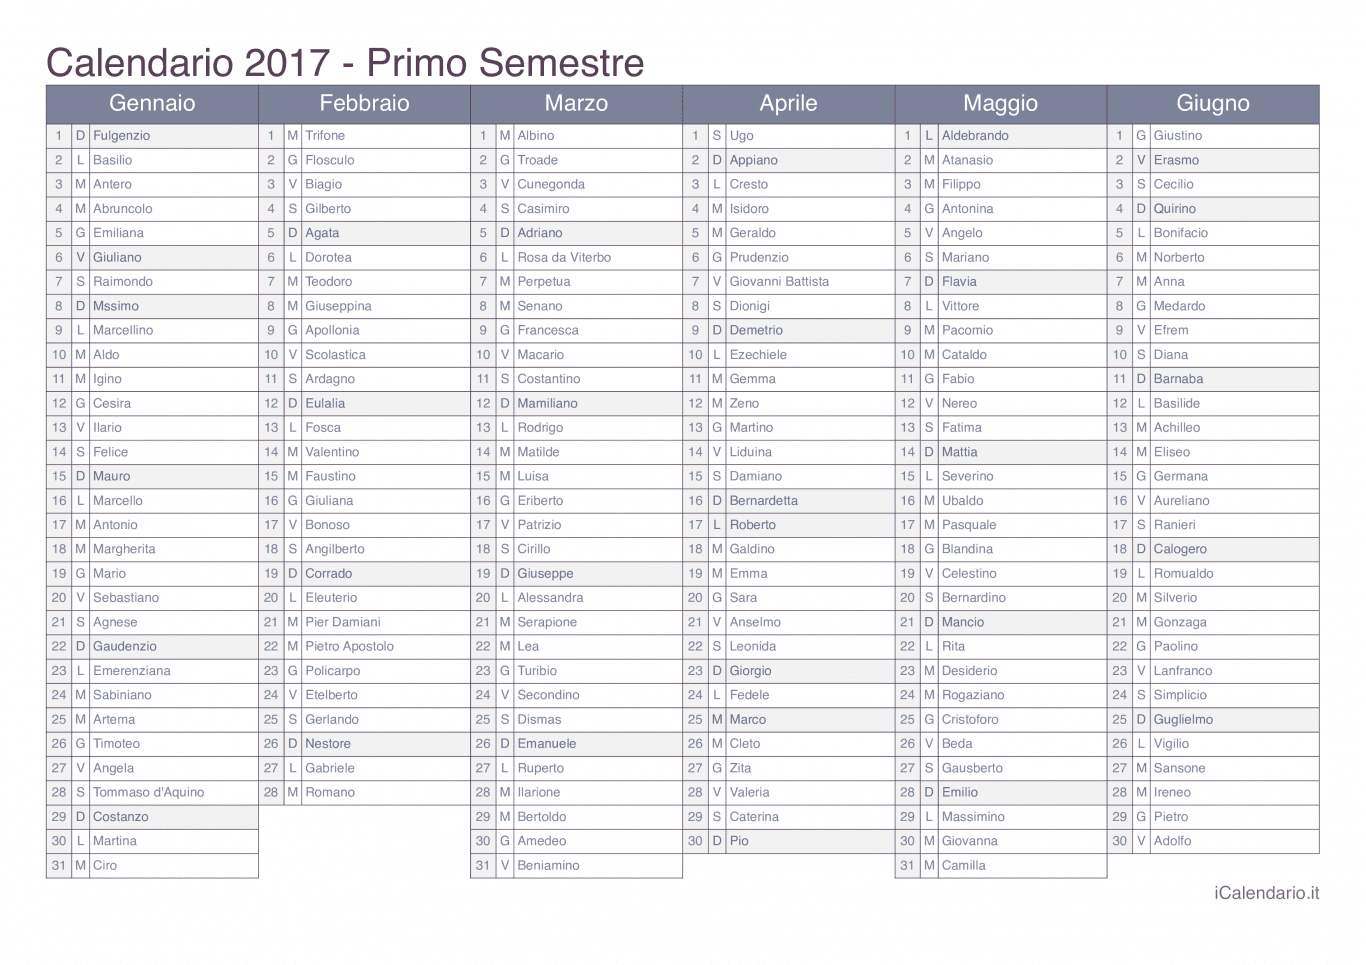 Calendario semestrale 2017 con santi e festivi - Office